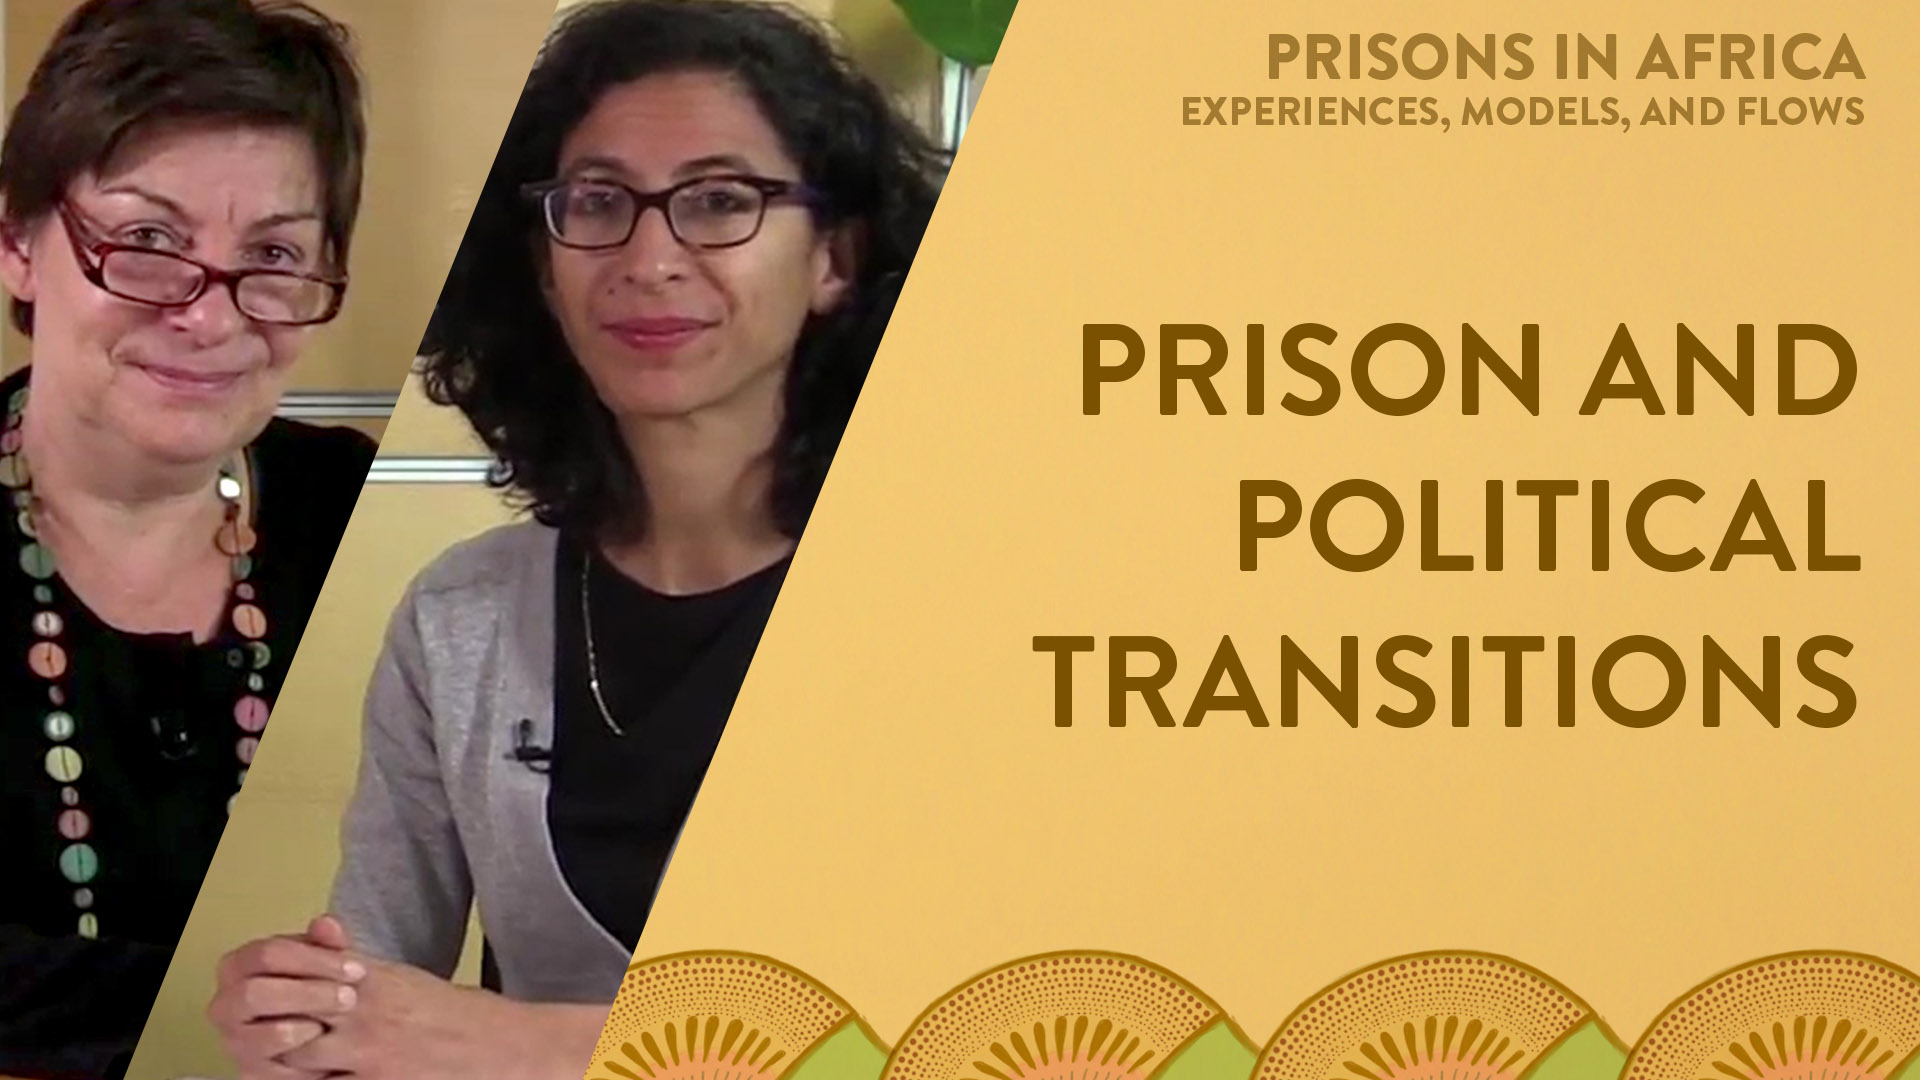 2.5 - Prison et transitions politiques